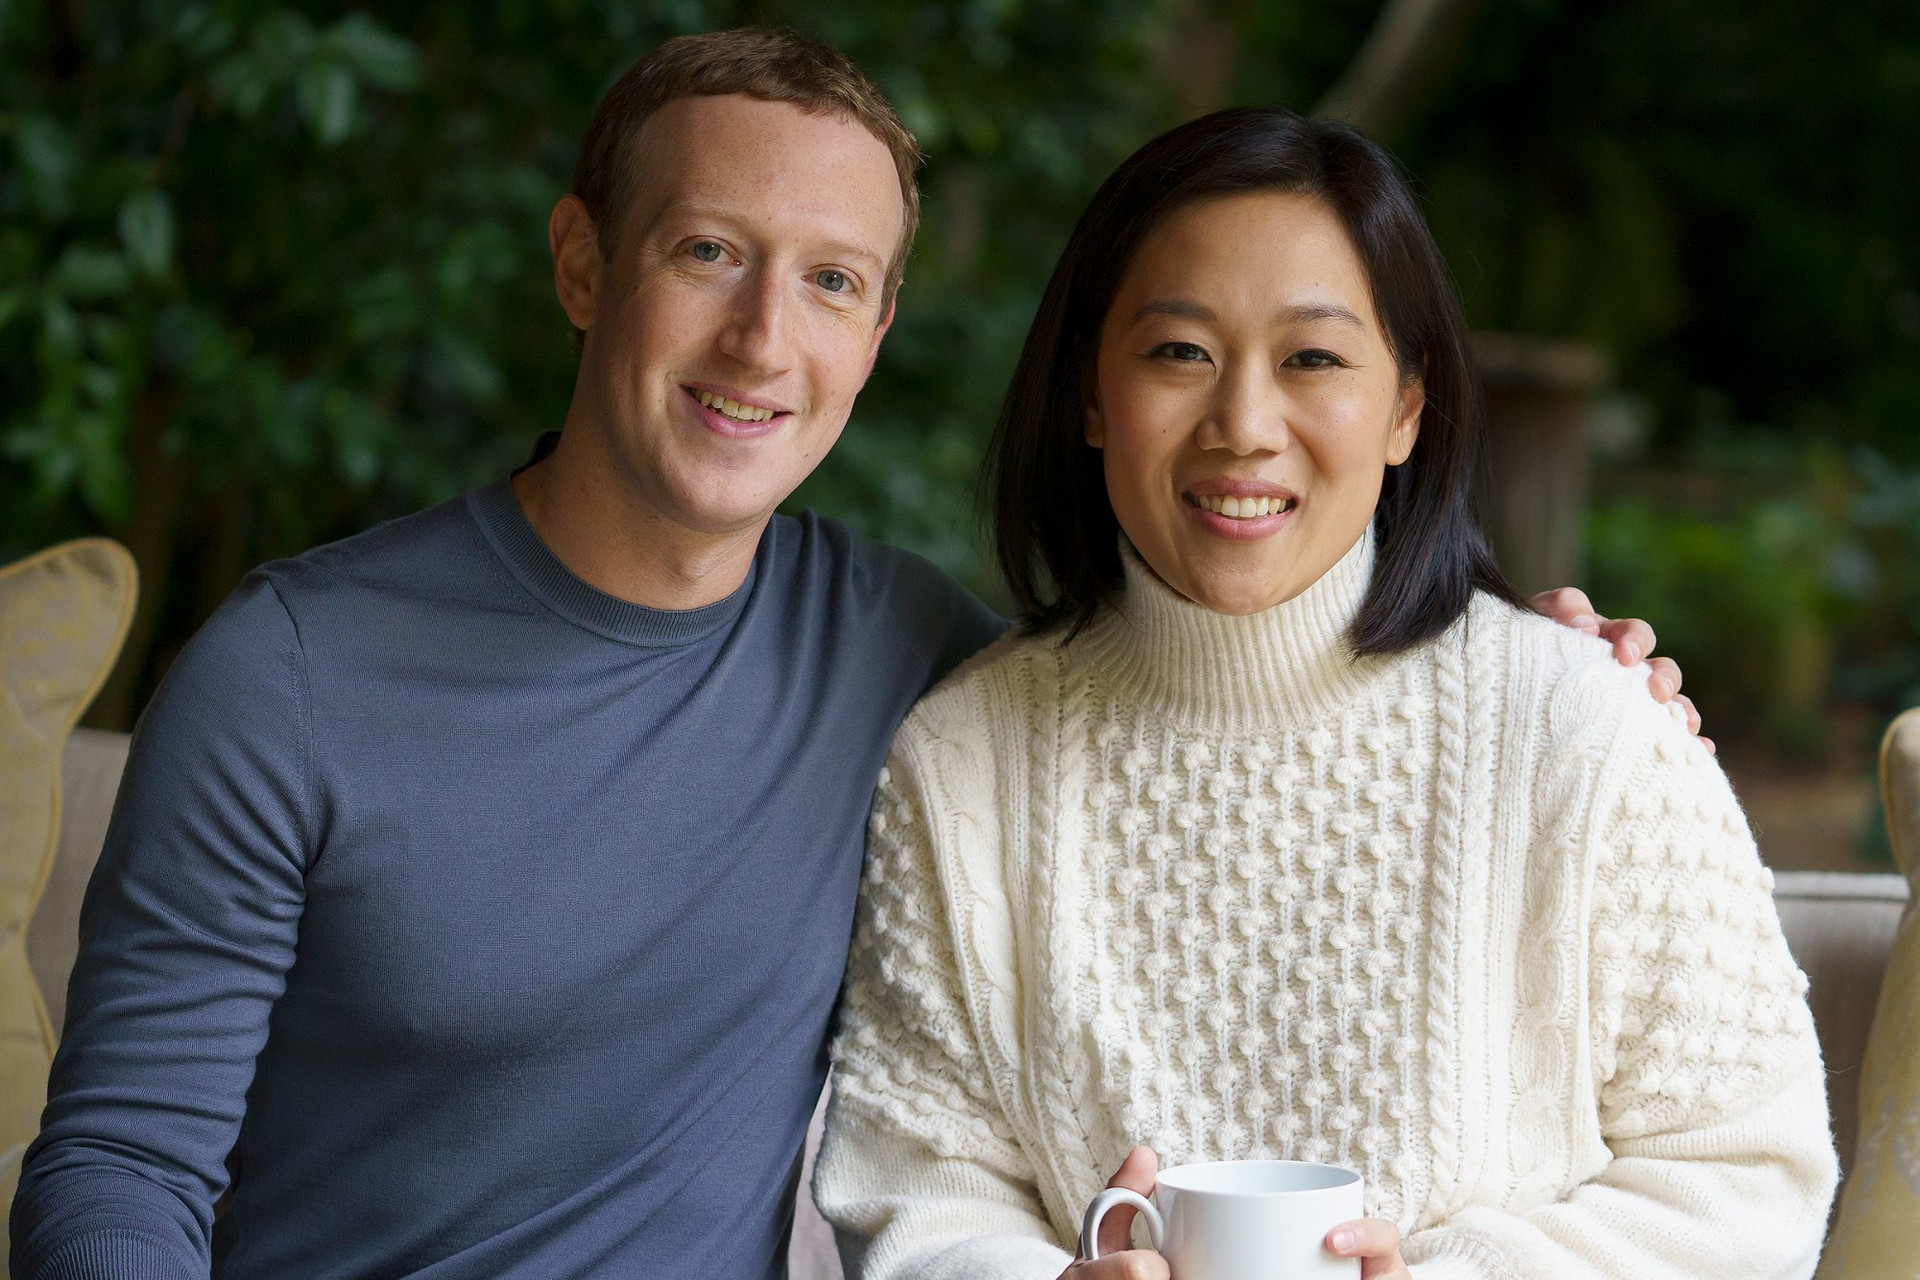 Con dâu tỷ phú giàu nhất châu Á, vợ nhà sáng lập Facebook, Baidu đều có chung 1 ĐẶC ĐIỂM về học vấn: Đúng ‘nồi nào úp vung nấy’, lấy chồng giàu xứng đáng!